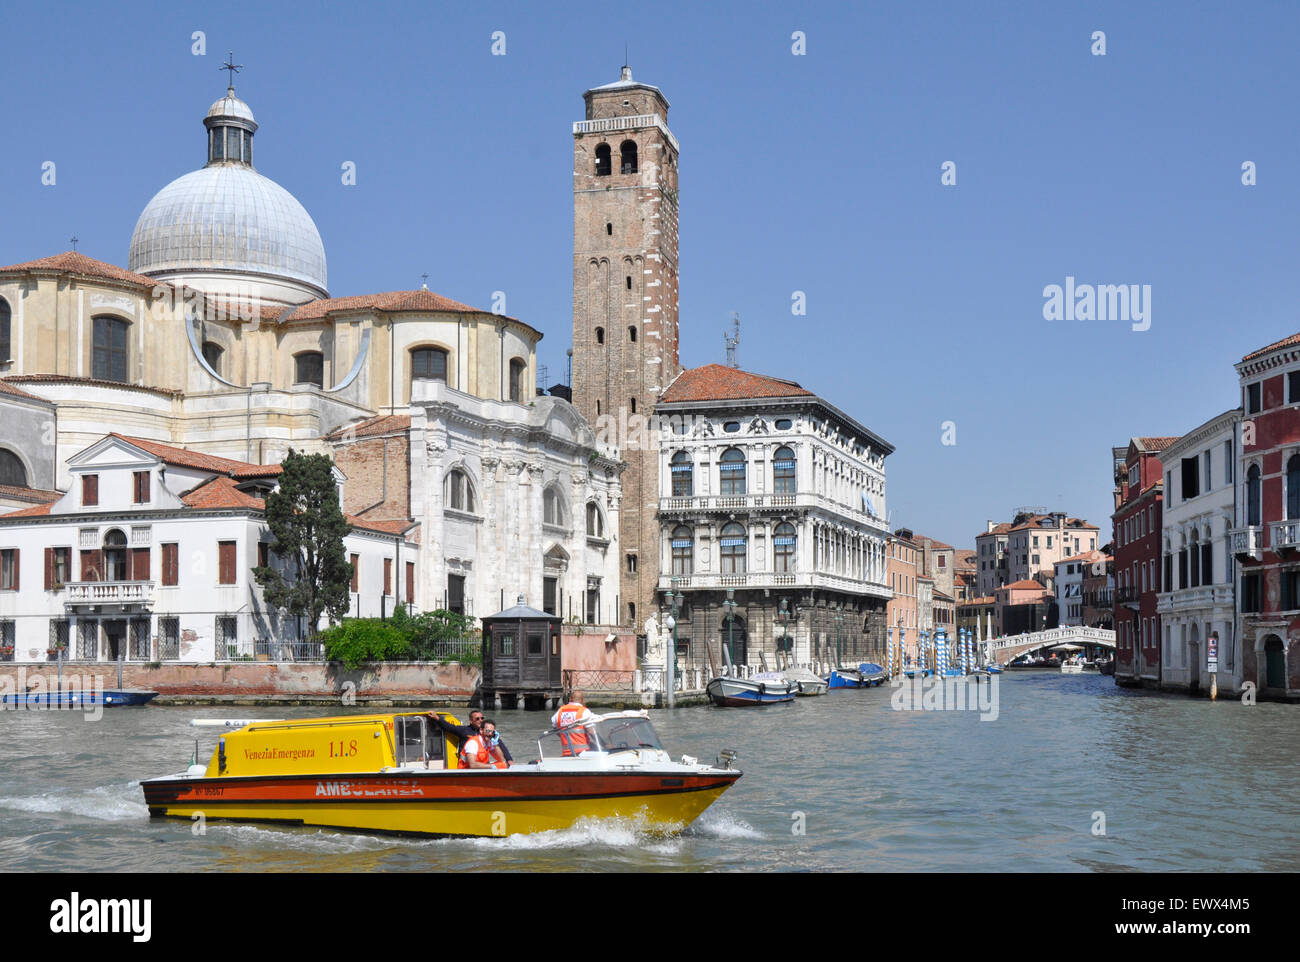 Italia - Venecia - Canale Grande - región Cannaregio - motor de ambulancia de lanzamiento - Venezia - Emergenza on call - pasando por San Geremia Foto de stock